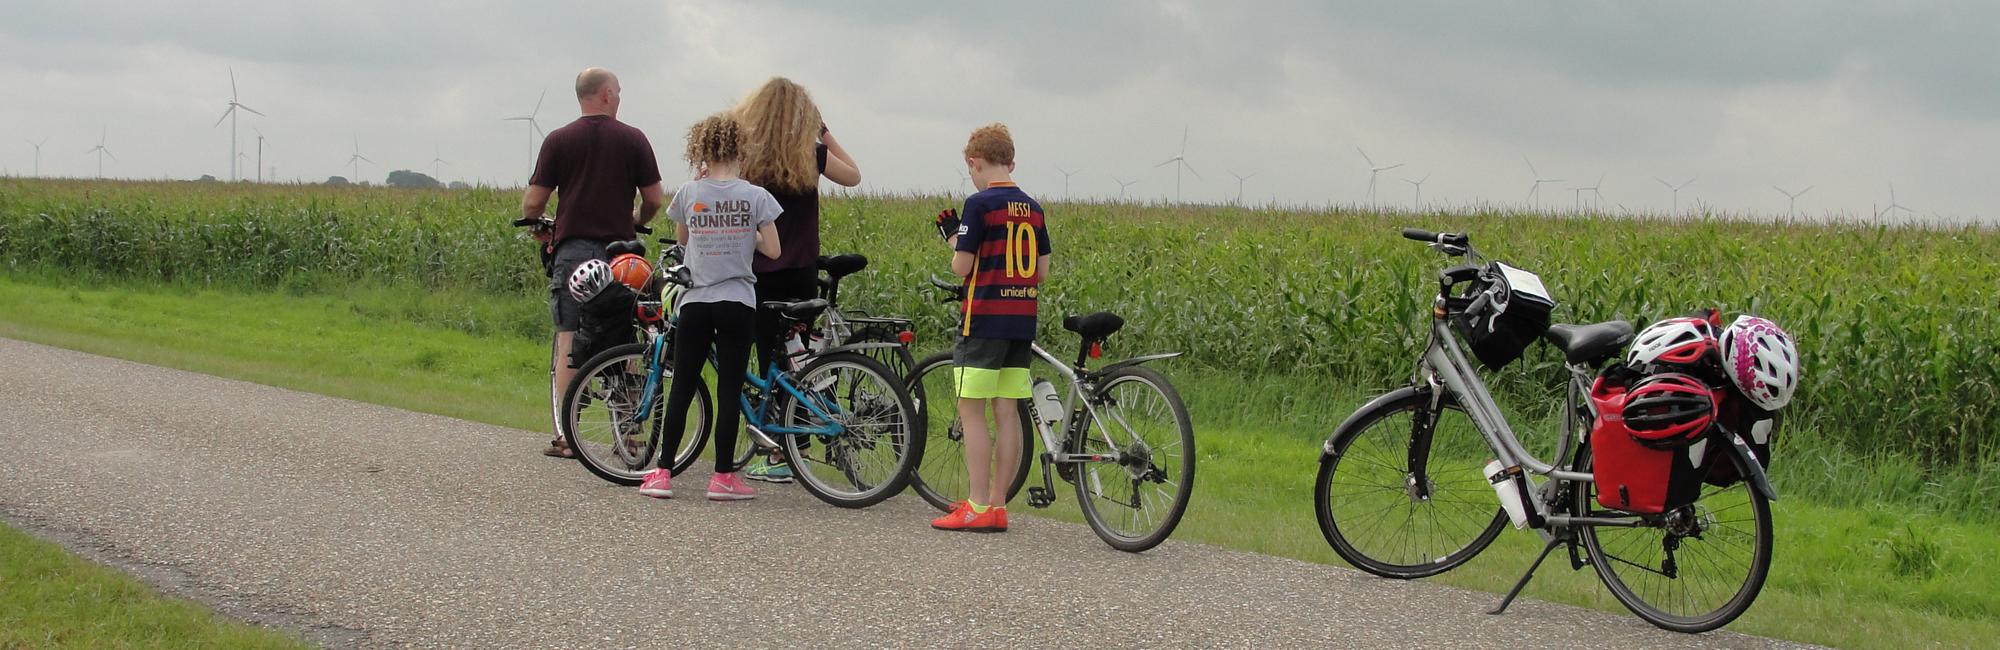 Dutch Bike Tours Radreisen  Familiertour: Eine reise in die vergangenheit